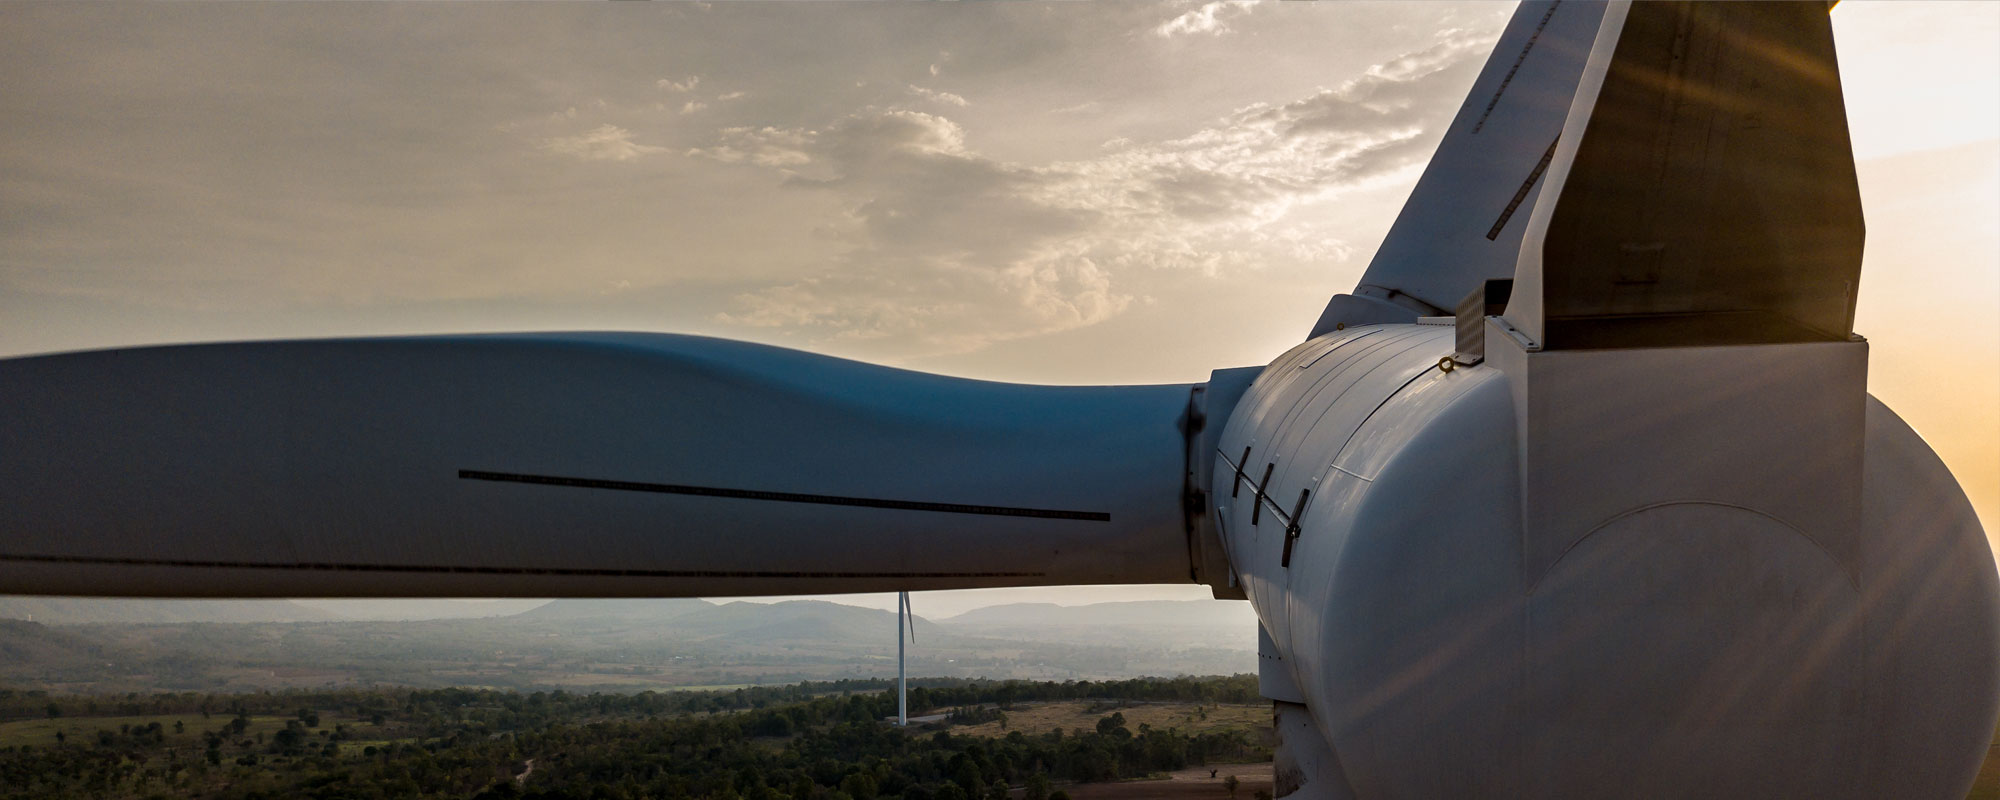 Daha Fazla Güç, Daha Fazla Verimlilik: TRB’ler Rüzgar Endüstrisini Nasıl Dönüştürüyor?